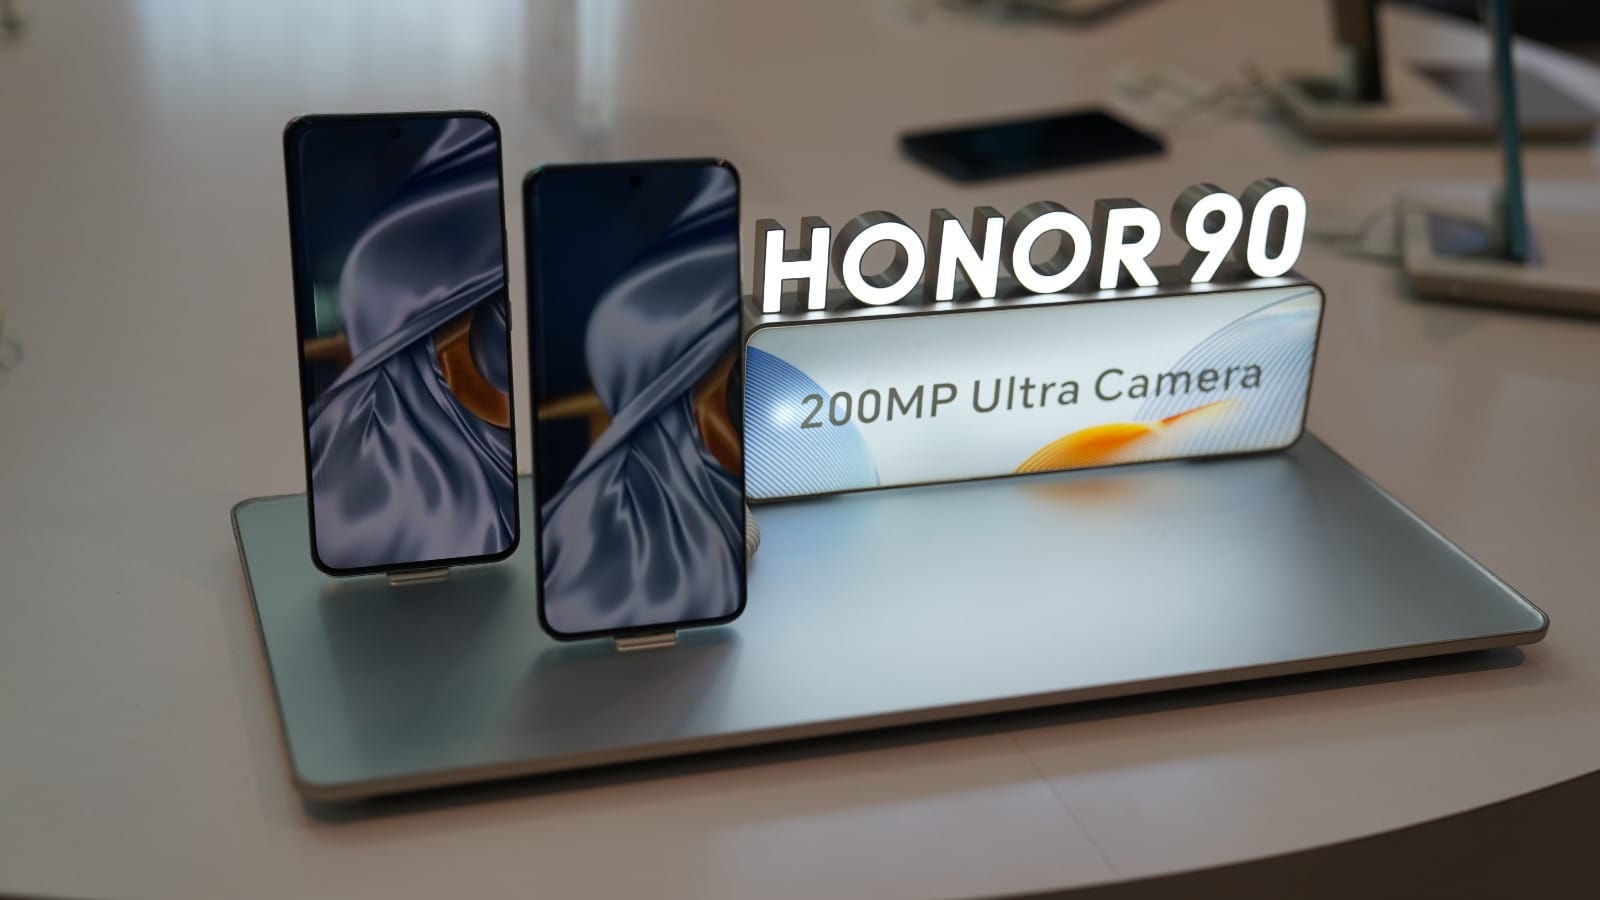 El Honor 90 y su cámara de 200 MP llegan a España: características